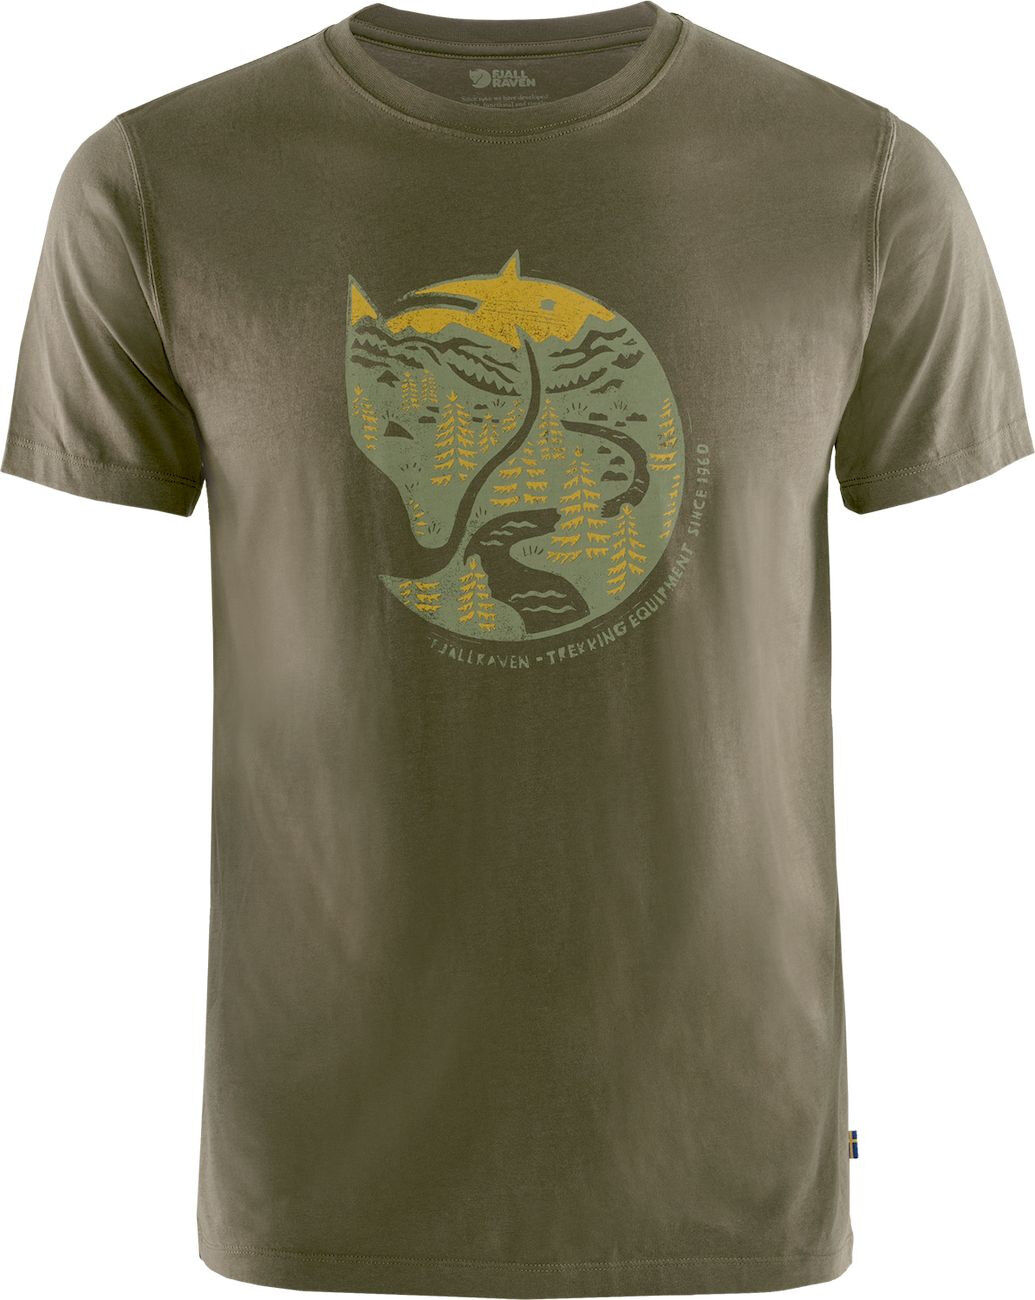 Fjällräven Arctic Fox T-shirt - T-shirt - Men's